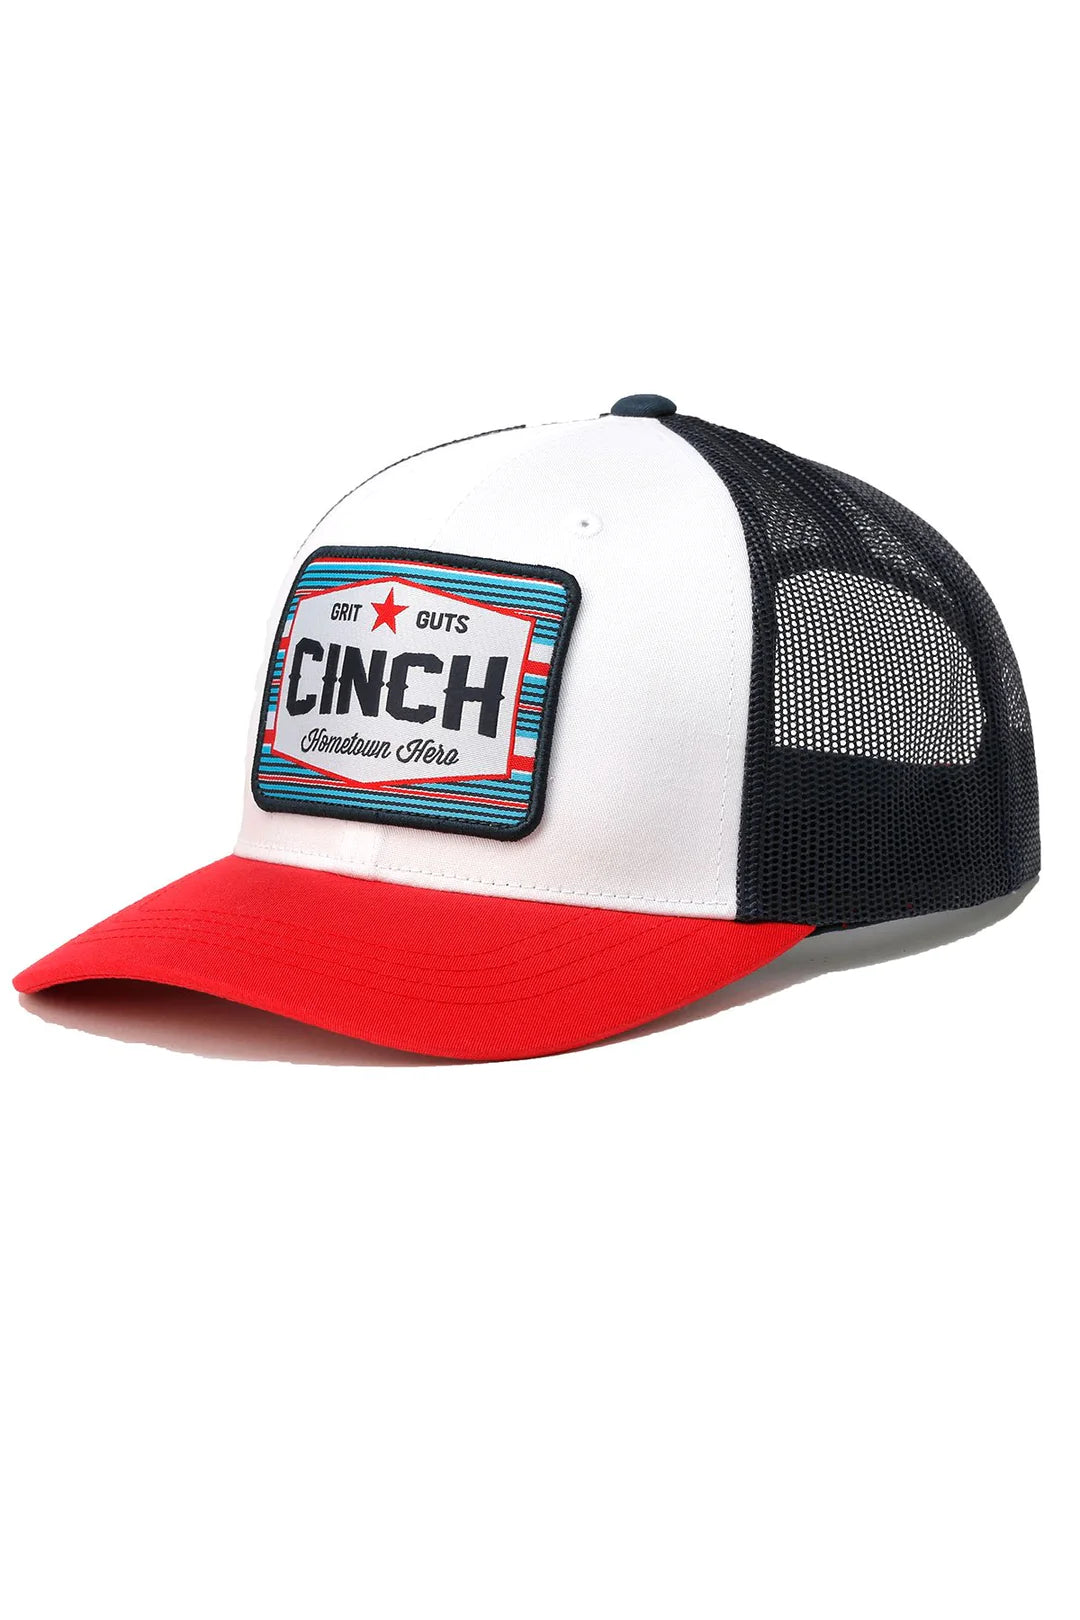 Cinch Cap | Hometown Hero